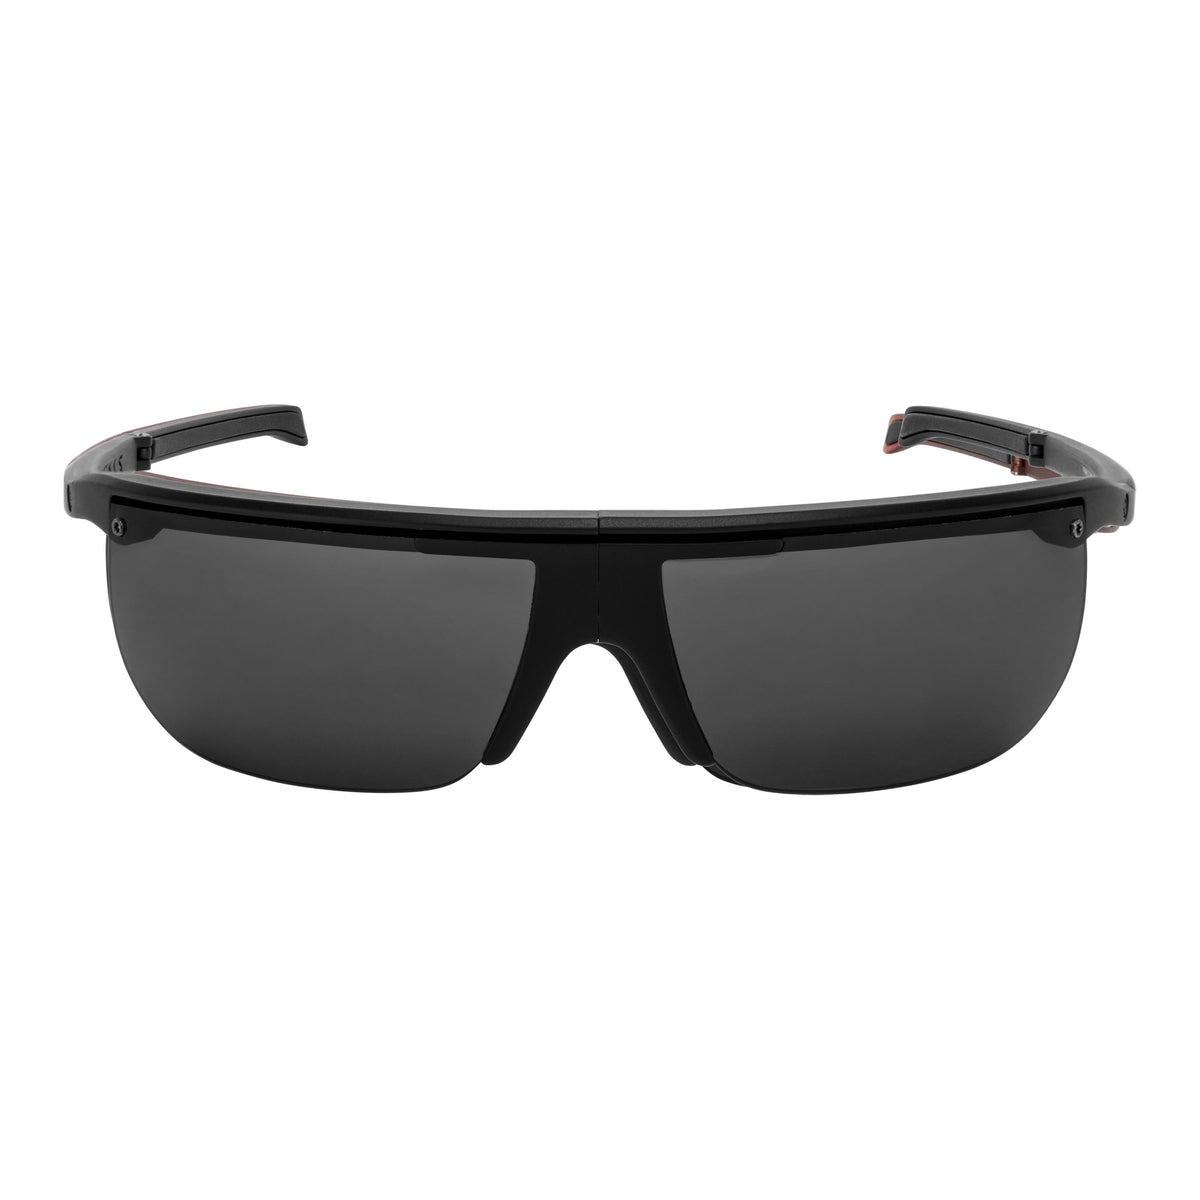 Popticals, Premium Compact Sunglasses, PopArt, 010030-BMGS, Standard Sunglasses, Matte Black Frame, Gray Lenses, Front Tilt View